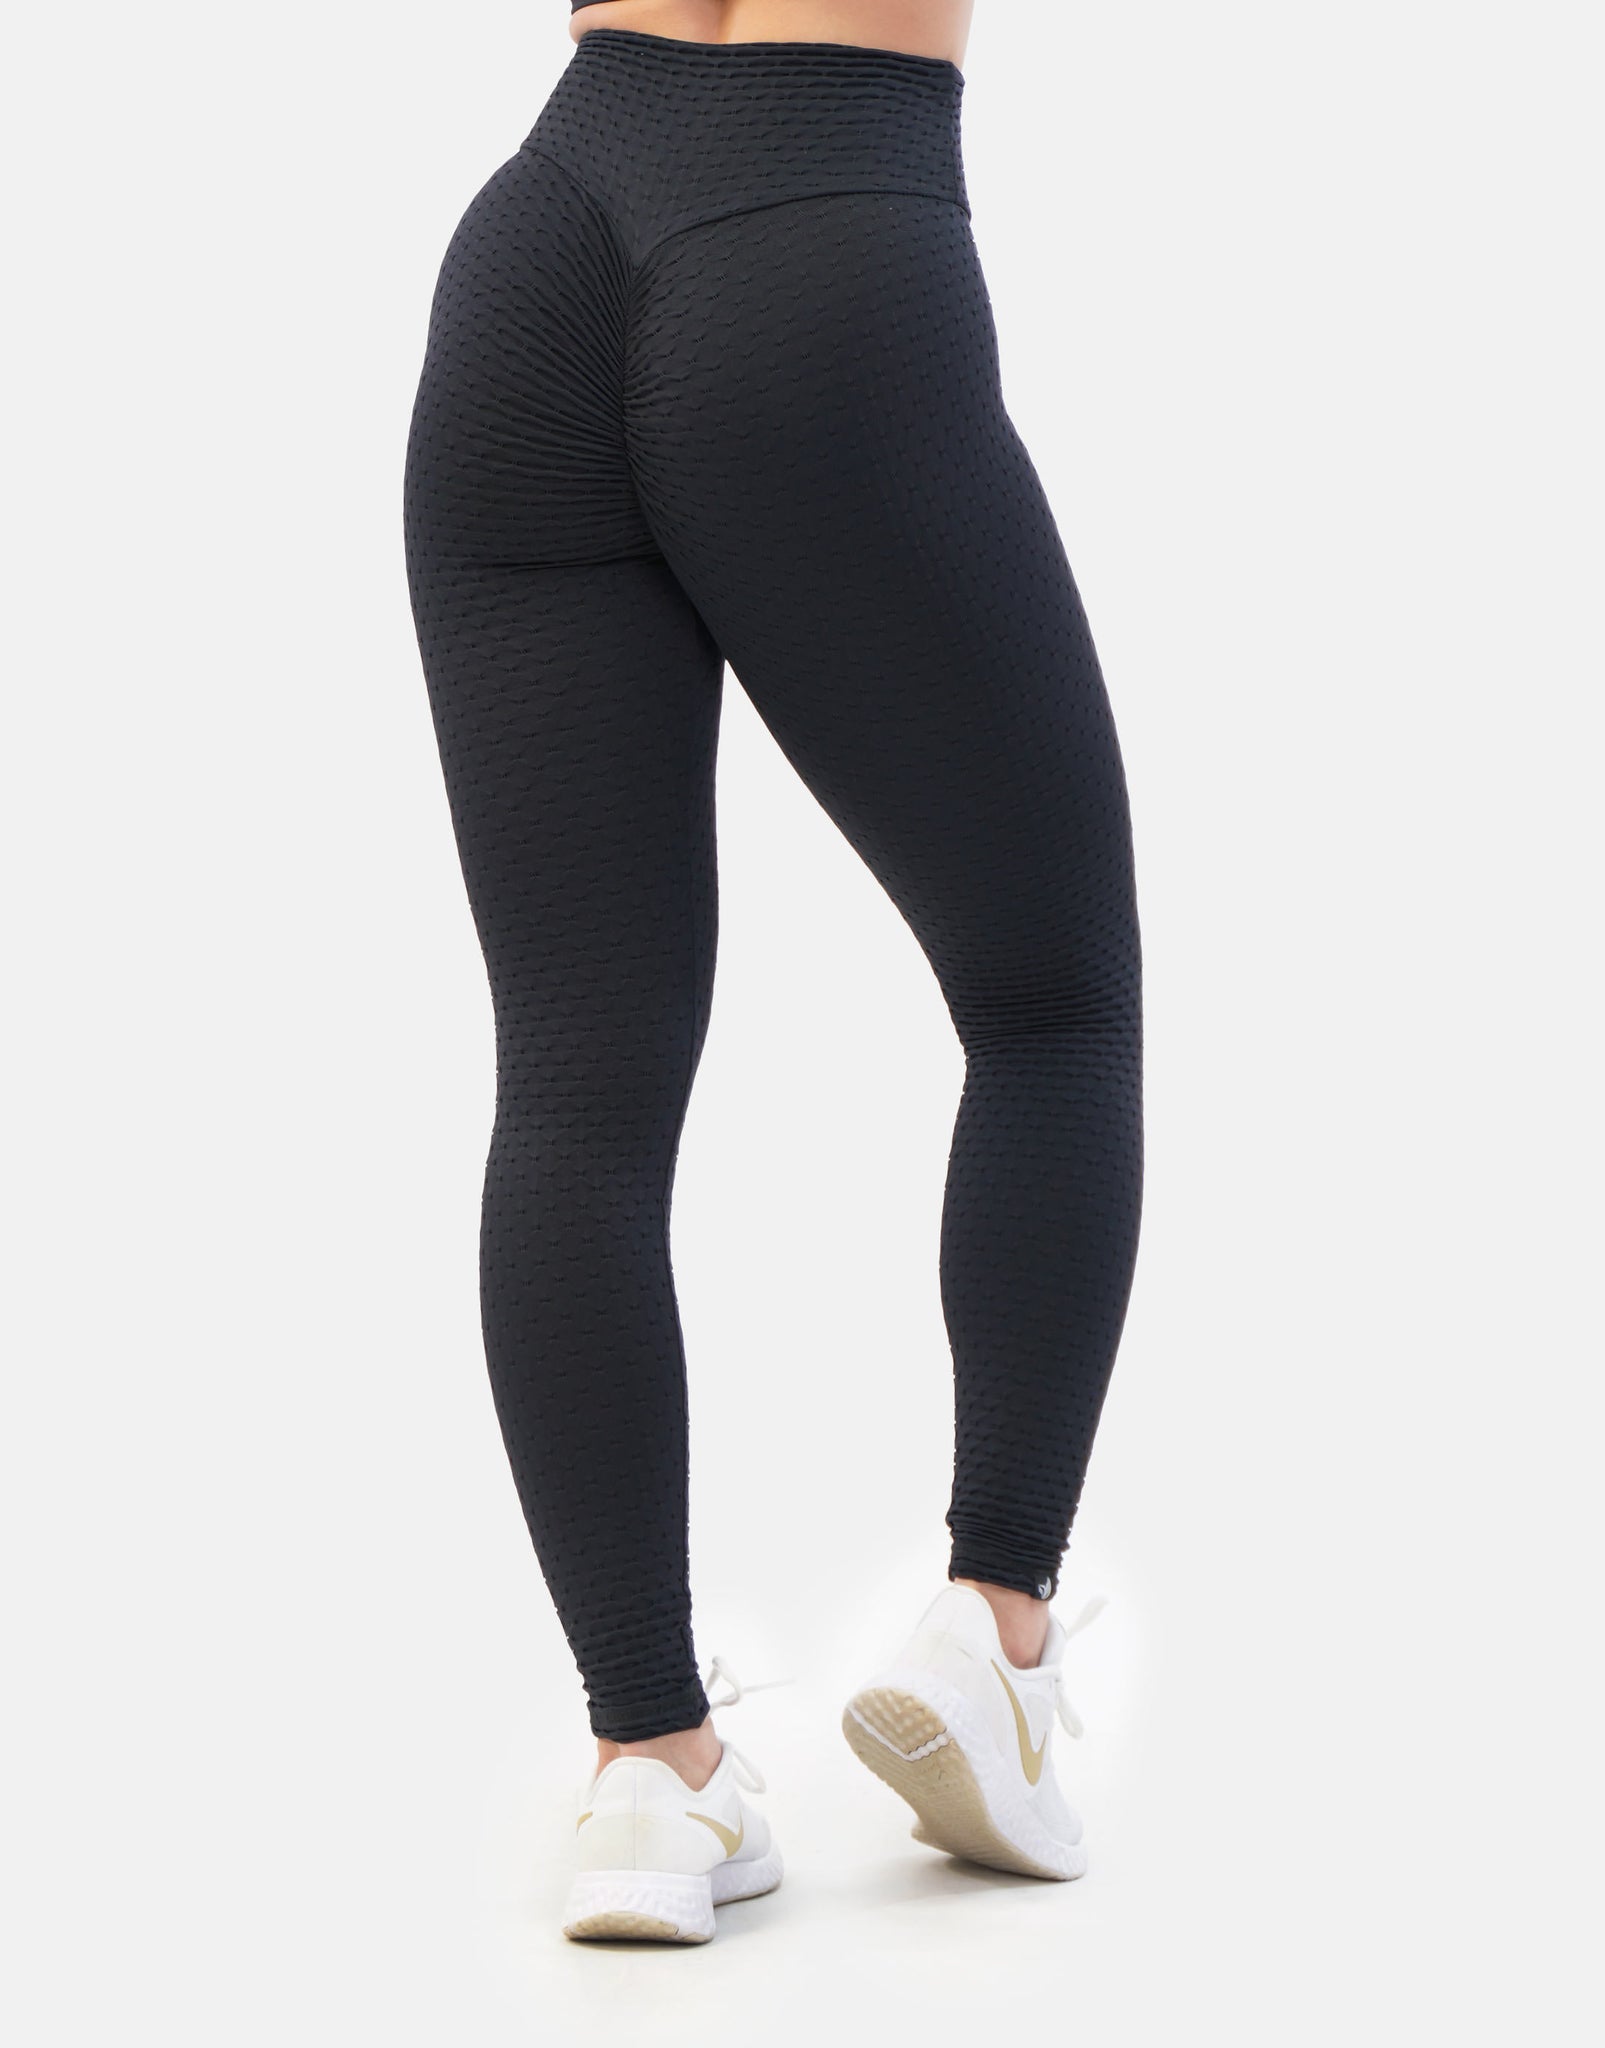 Scrunch Butt Legging for Gym, Yoga or Loungewear - Black 